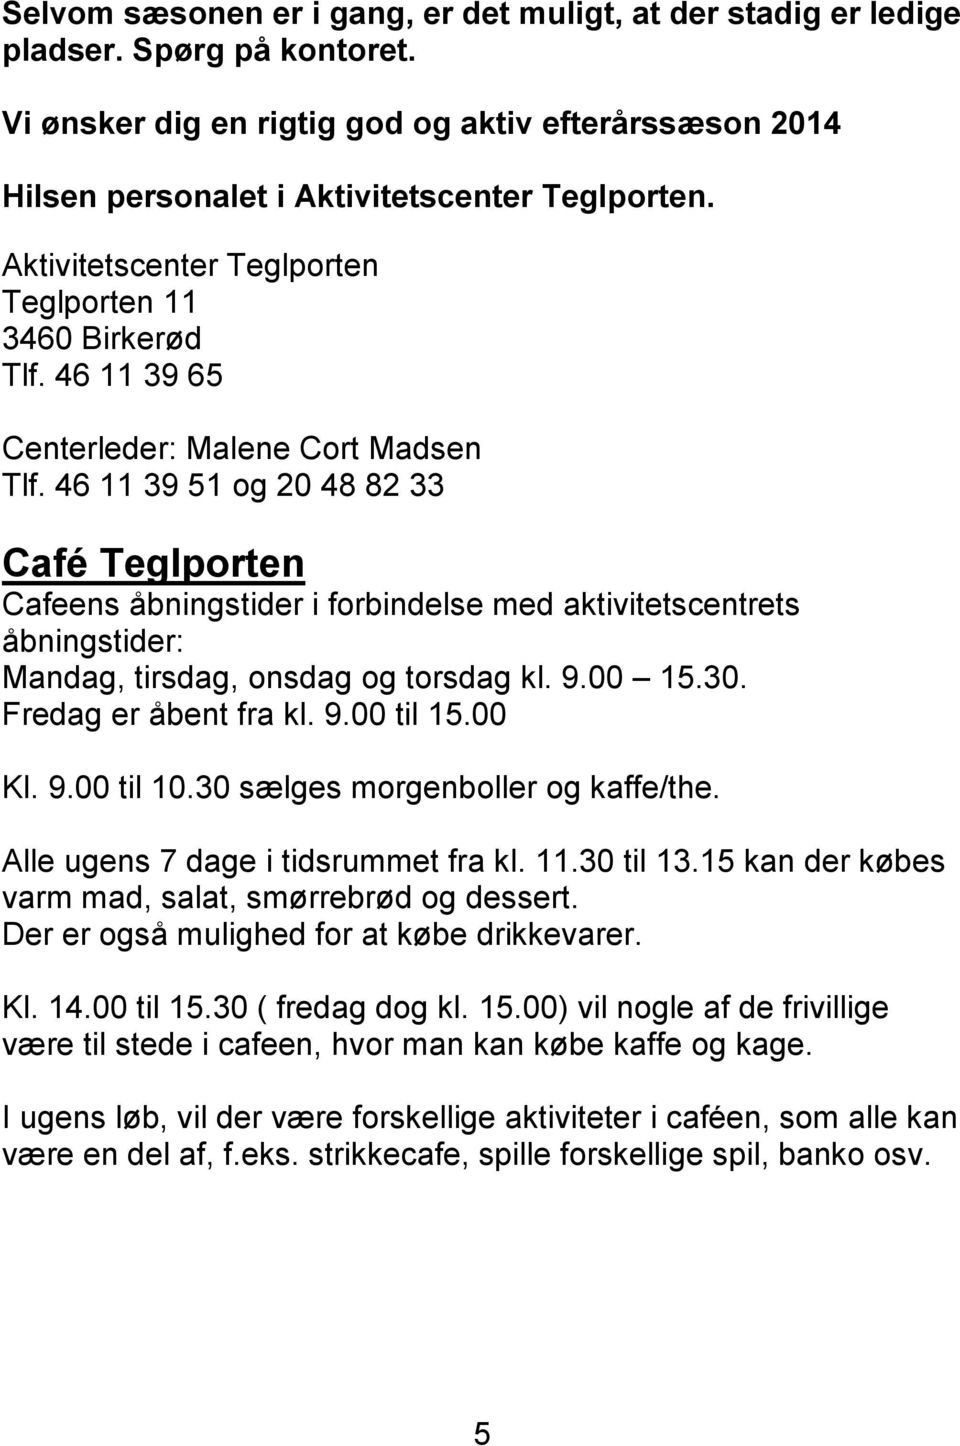 46 11 39 51 og 20 48 82 33 Café Teglporten Cafeens åbningstider i forbindelse med aktivitetscentrets åbningstider: Mandag, tirsdag, onsdag og torsdag kl. 9.00 15.30. Fredag er åbent fra kl. 9.00 til 15.